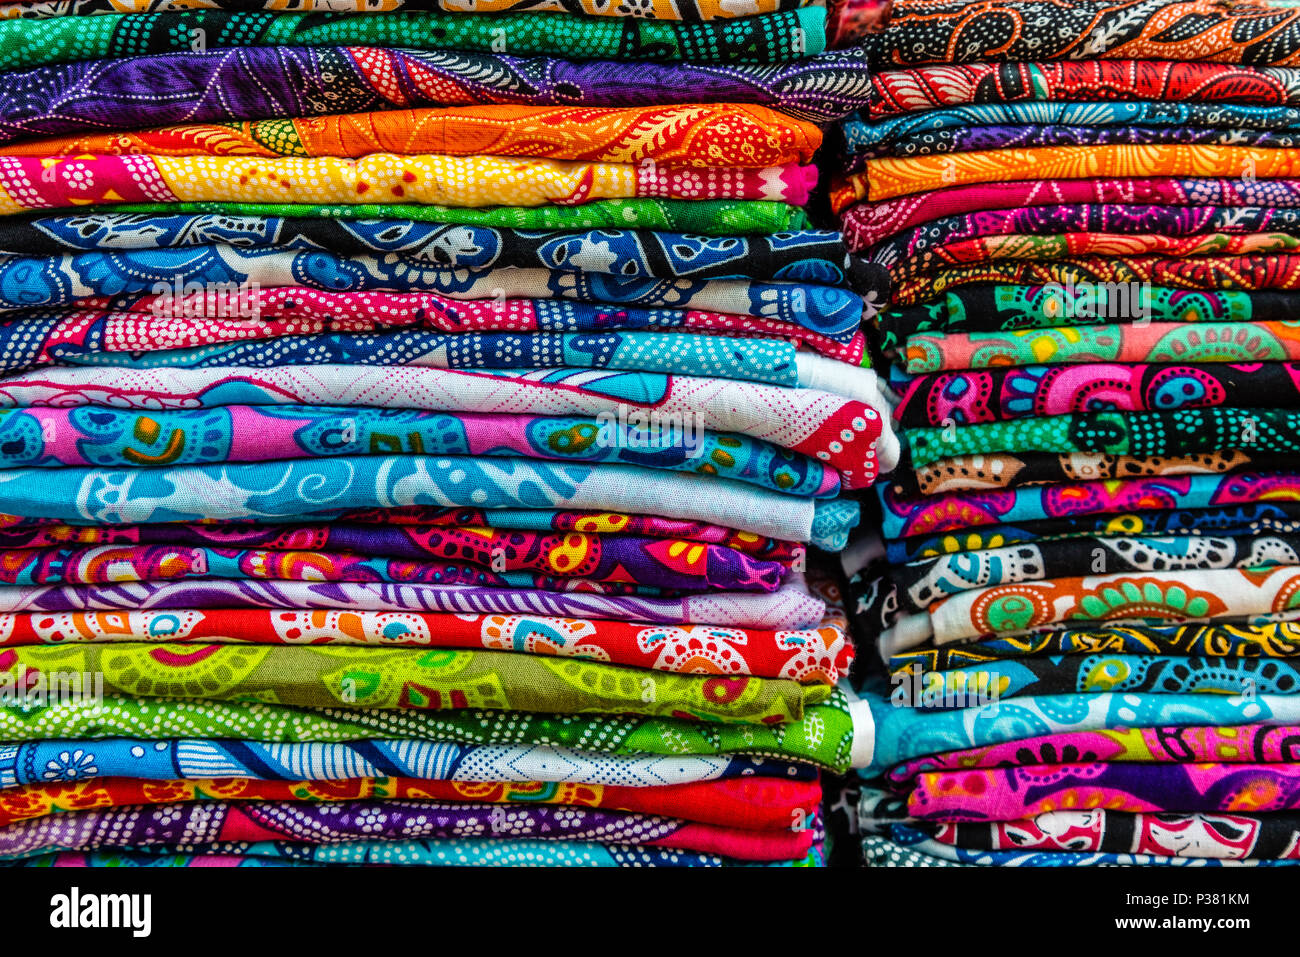 Coton coloré sarongs (kamben) sur un marché traditionnel local, Bali, Indonésie Banque D'Images